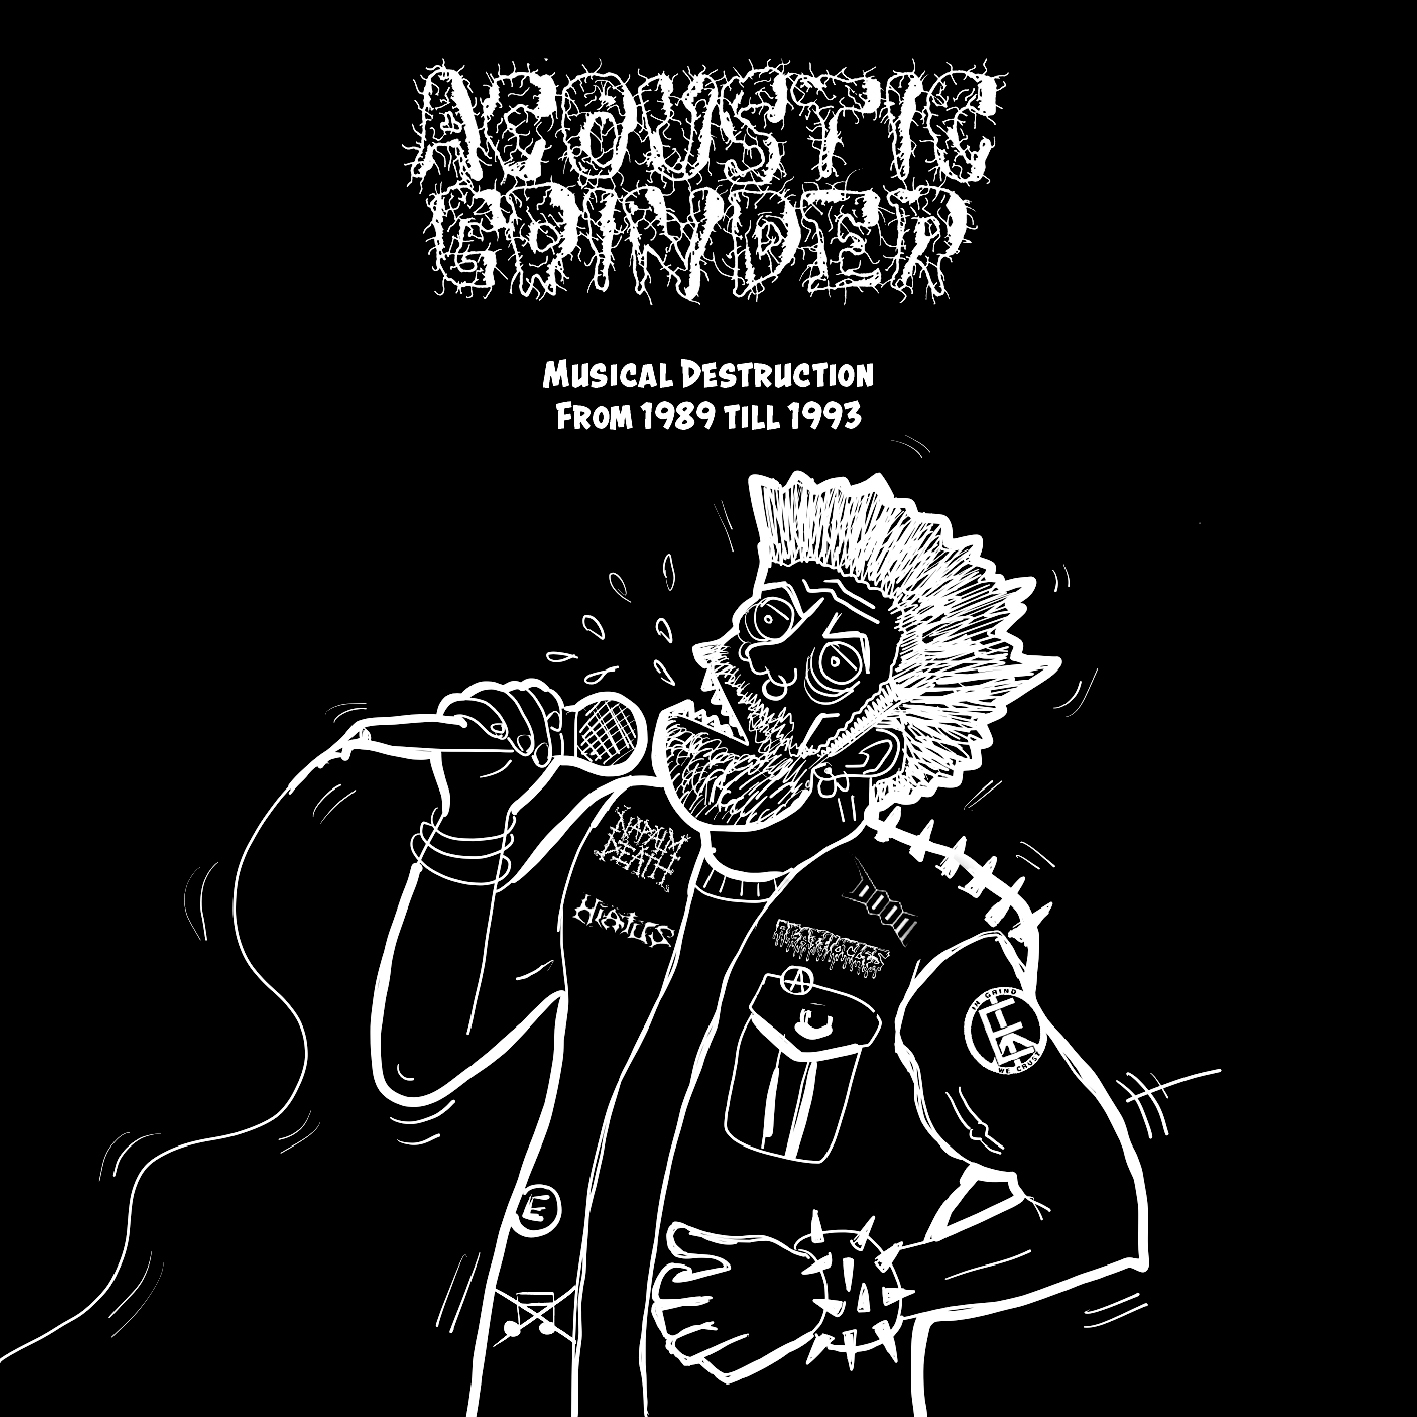 ACOUSTIC GRINDER - "MUSICAL DESTRUCTION FROM 1989 - 1993" DISCOG